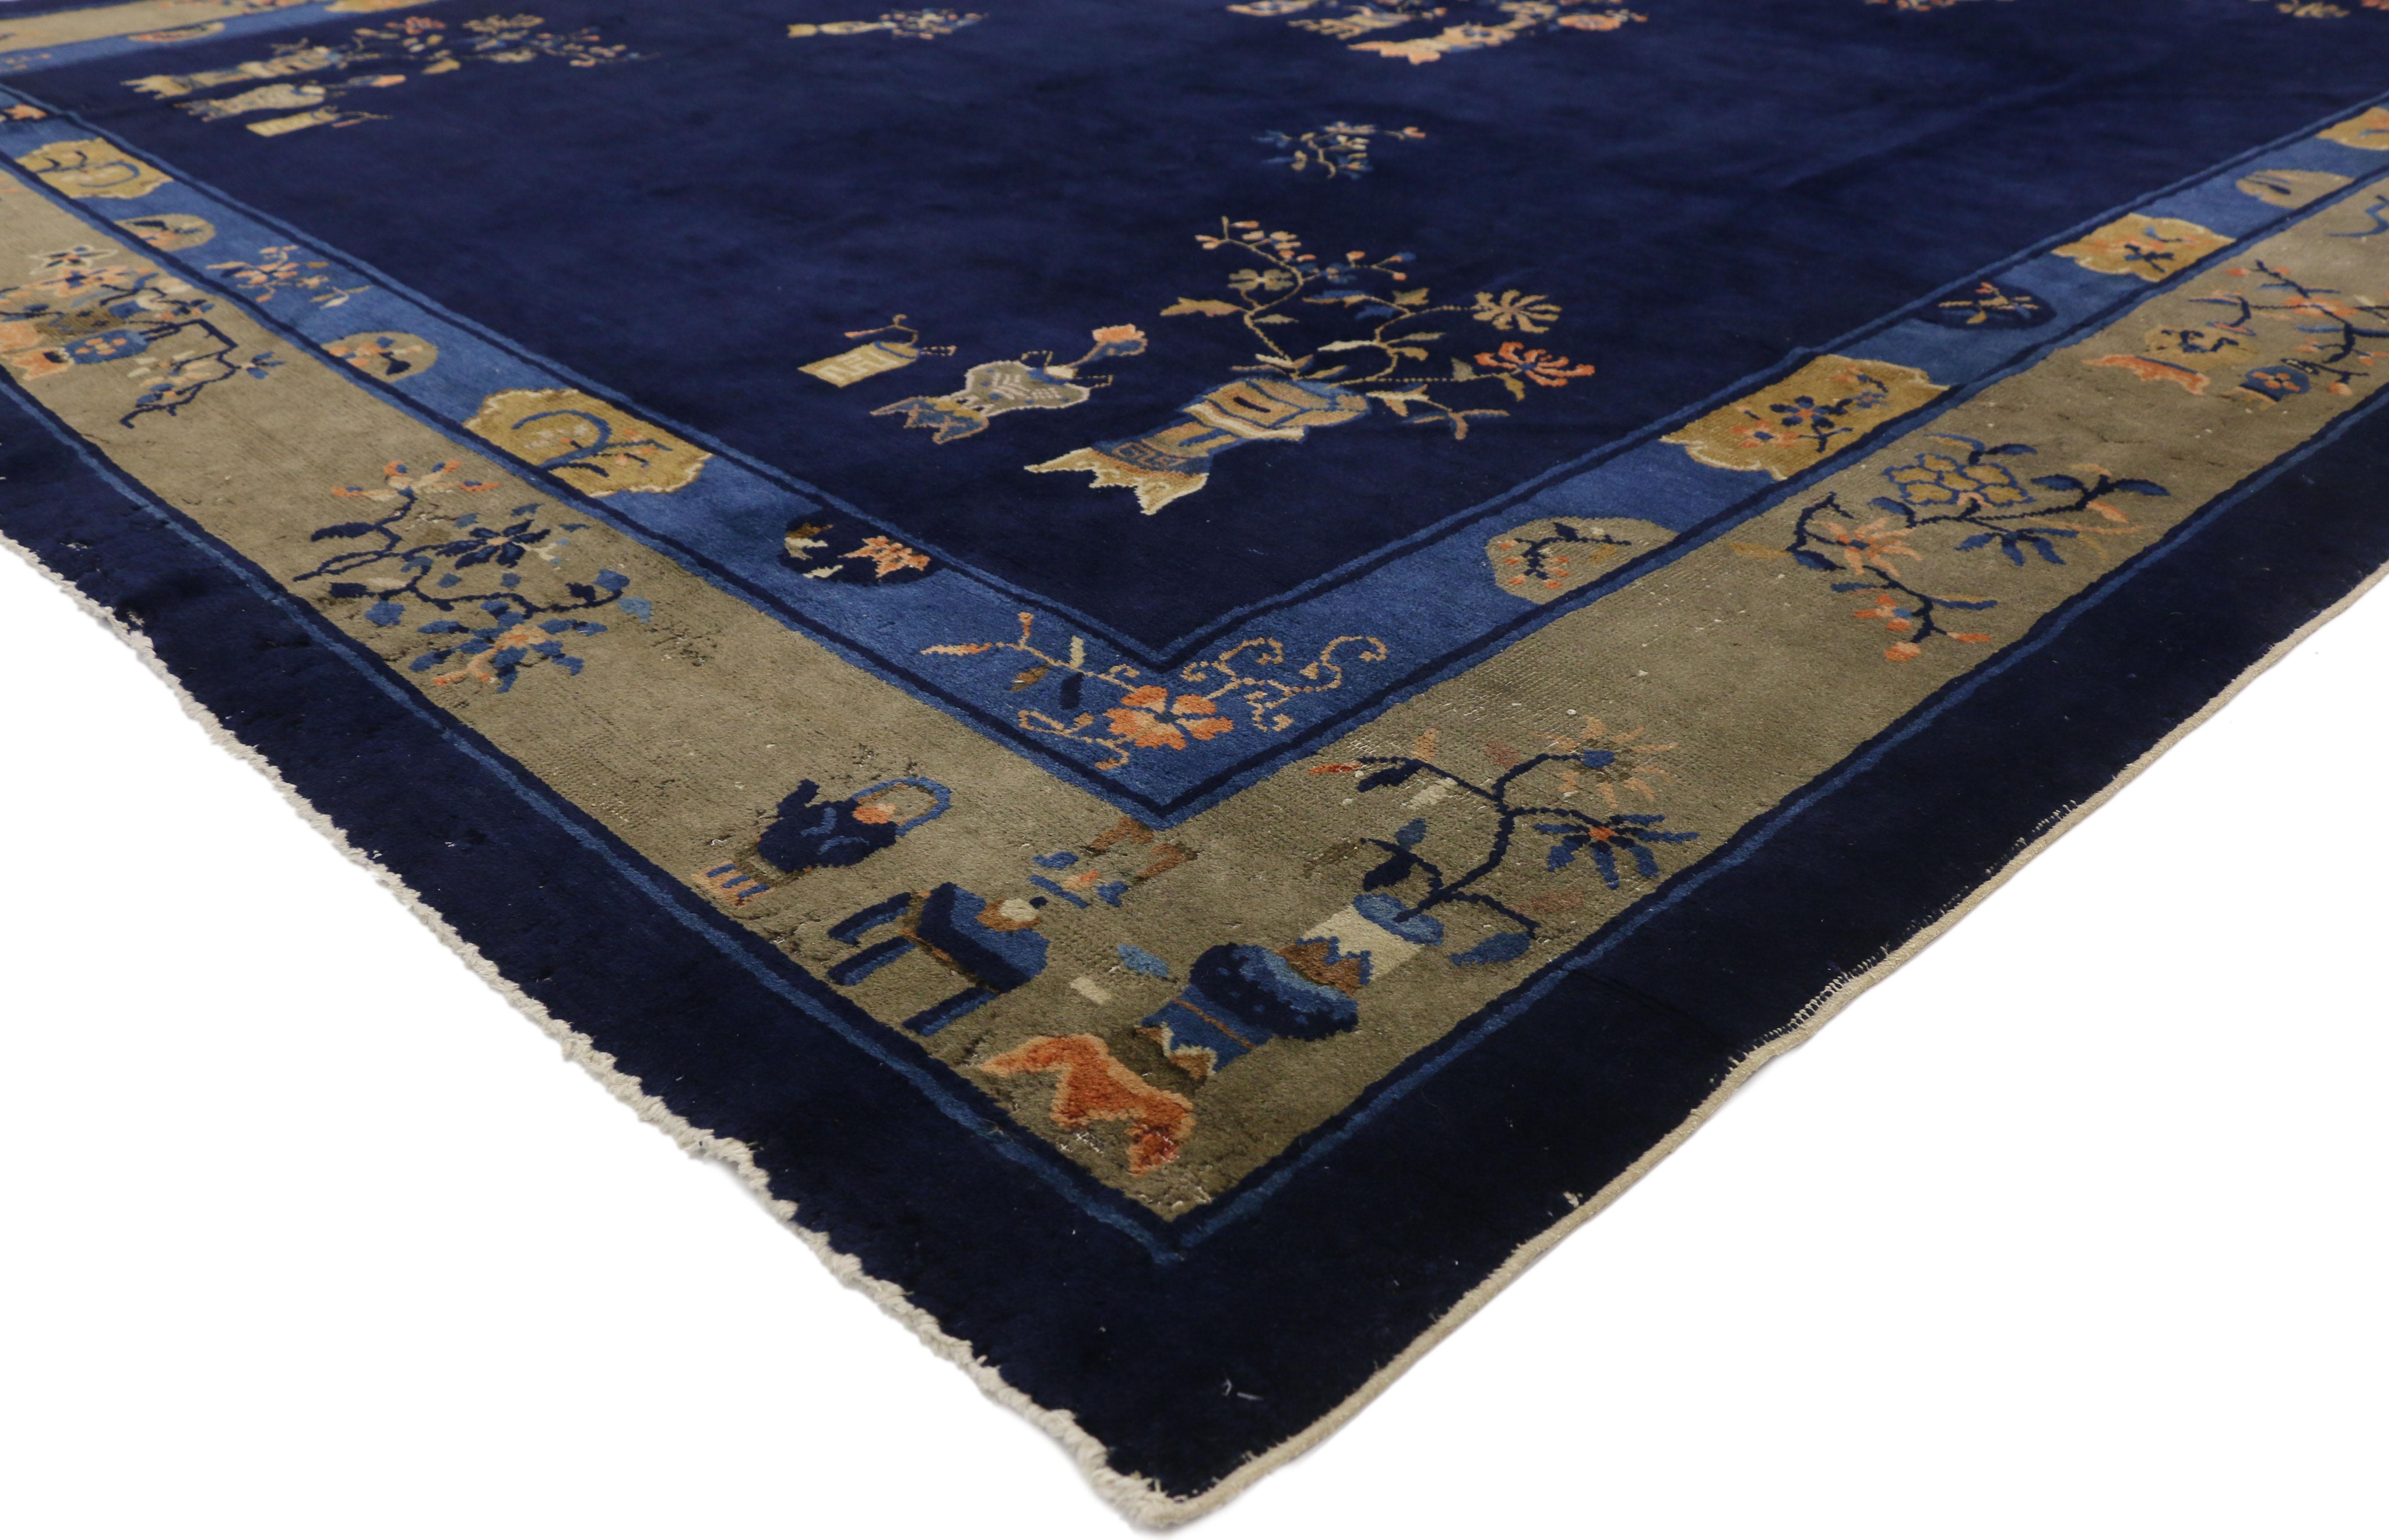 77260 Tapis chinois ancien de Pékin de style chinoiserie traditionnelle. Ce tapis chinois ancien de Pékin en laine nouée à la main présente un groupe de trois vases cloisonnés fleuris flottant dans un champ ouvert bleu marine indigo abrasé. Le